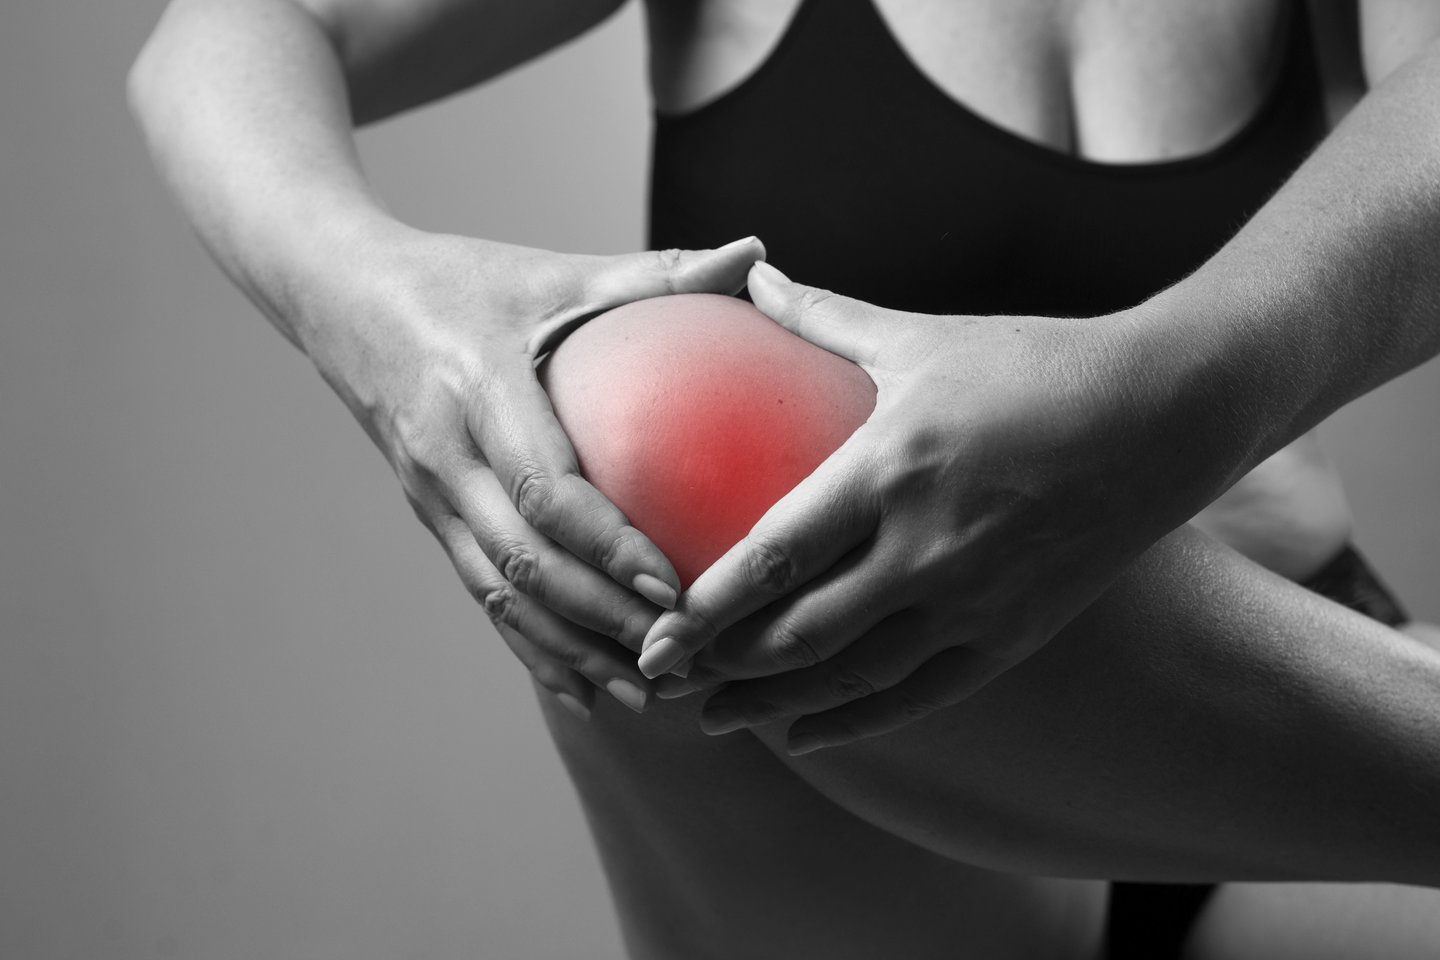 krutines speneliu skausmas jungtys crunch raumenys skauda ​​kas tai yra